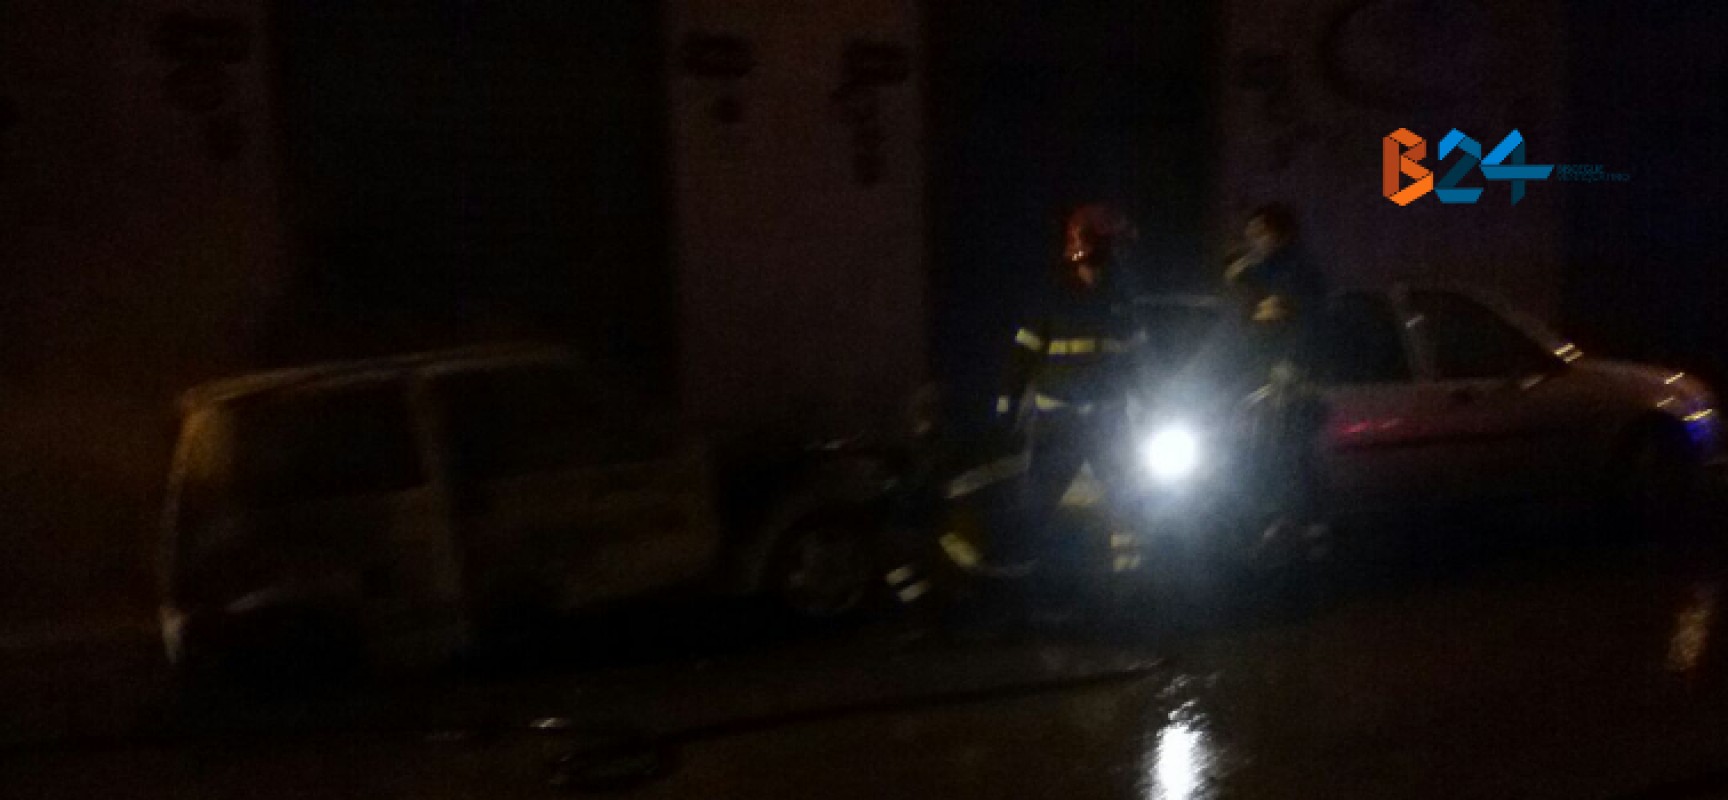 Via Curtopassi e via Monterisi, due auto in fiamme nella notte / FOTO